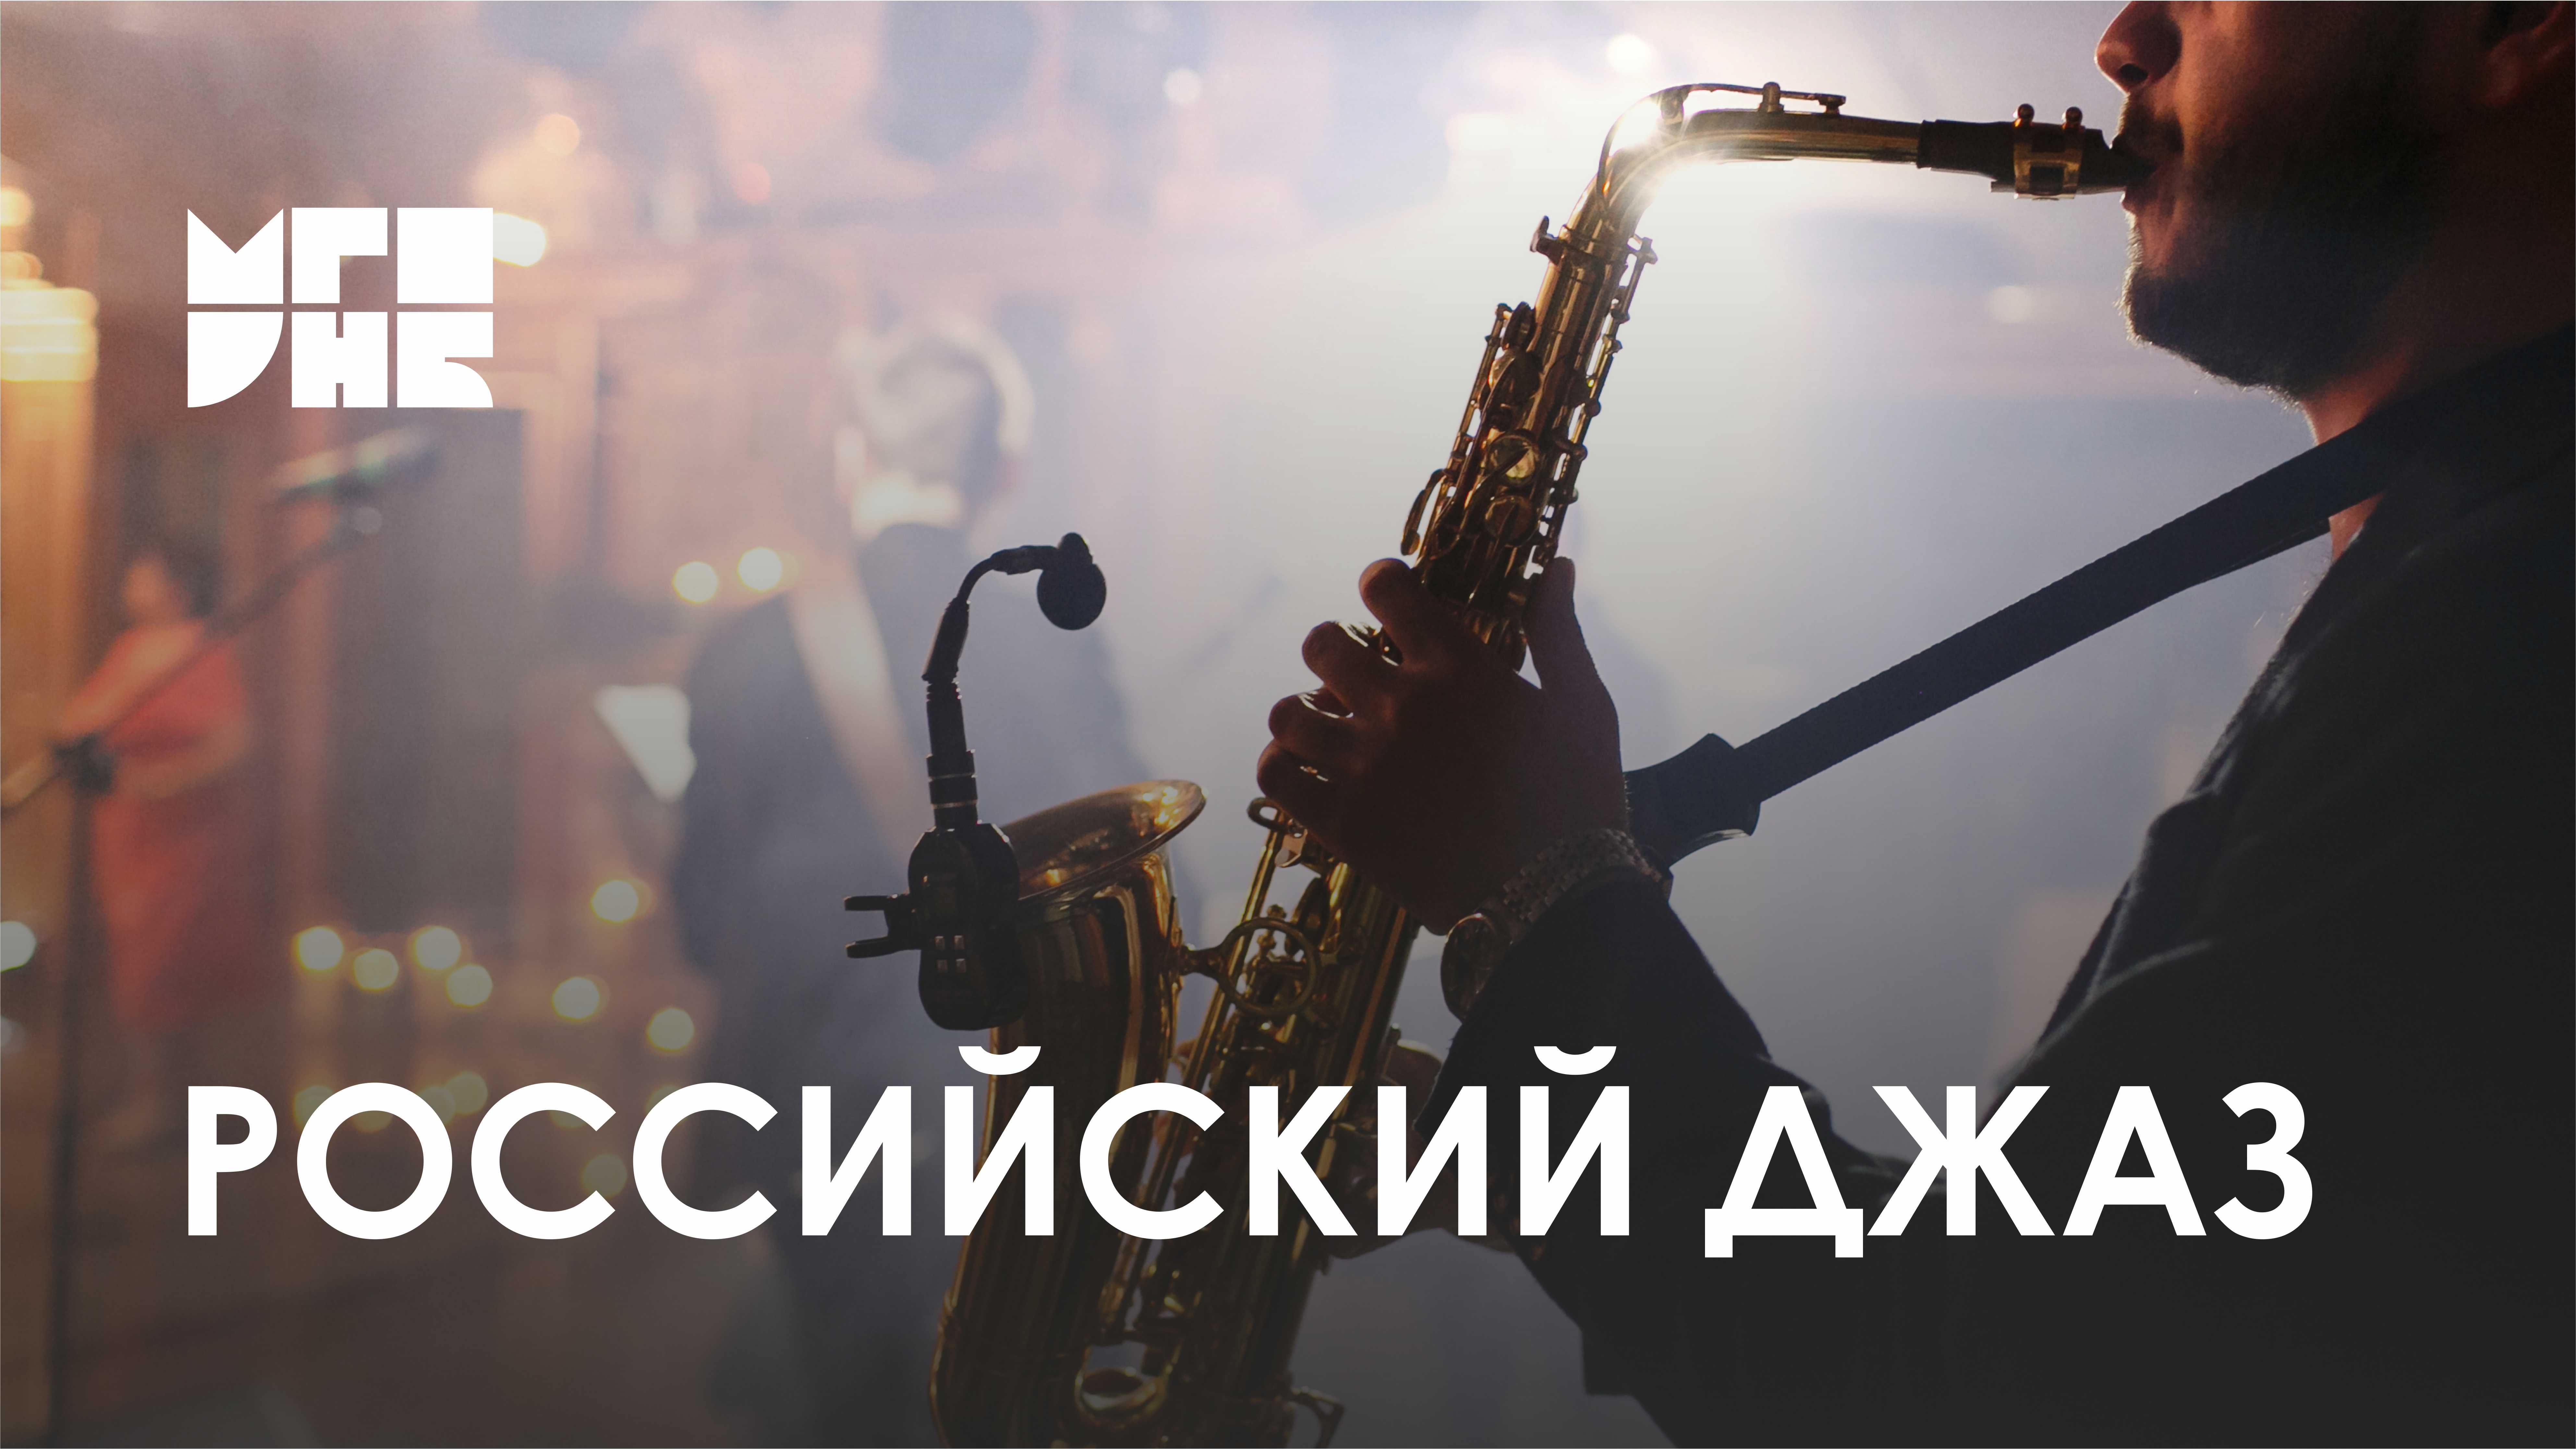 К 100-летию российского джаза